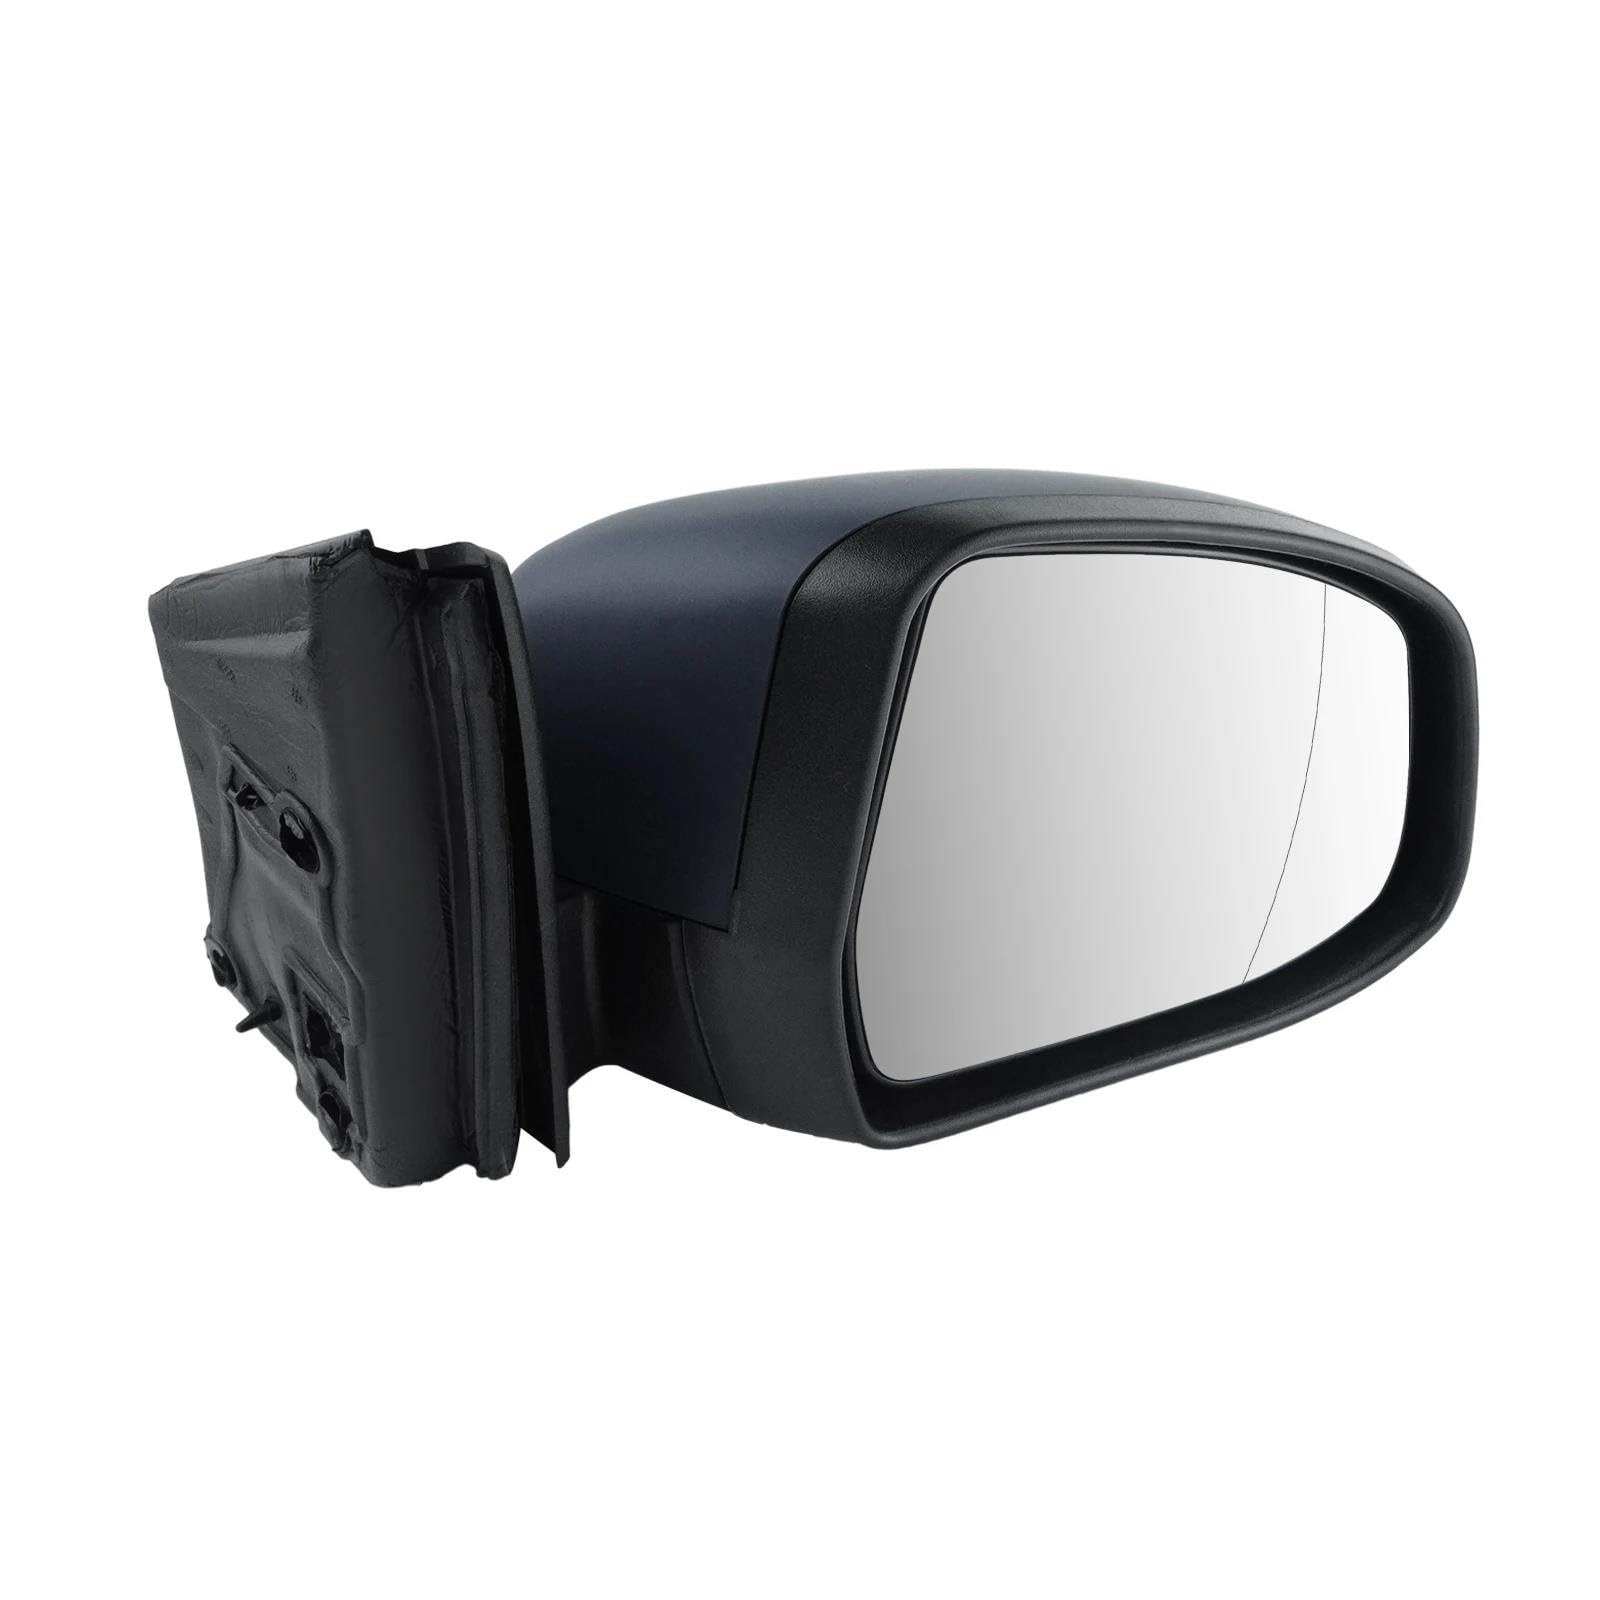 Ultradünne Spiegel Ersatzteile Für Rückspiegelglas Autorückspiegel Beheiztes Rückspiegelglas Für Focus MK3 2010-2018 von DTSGCX